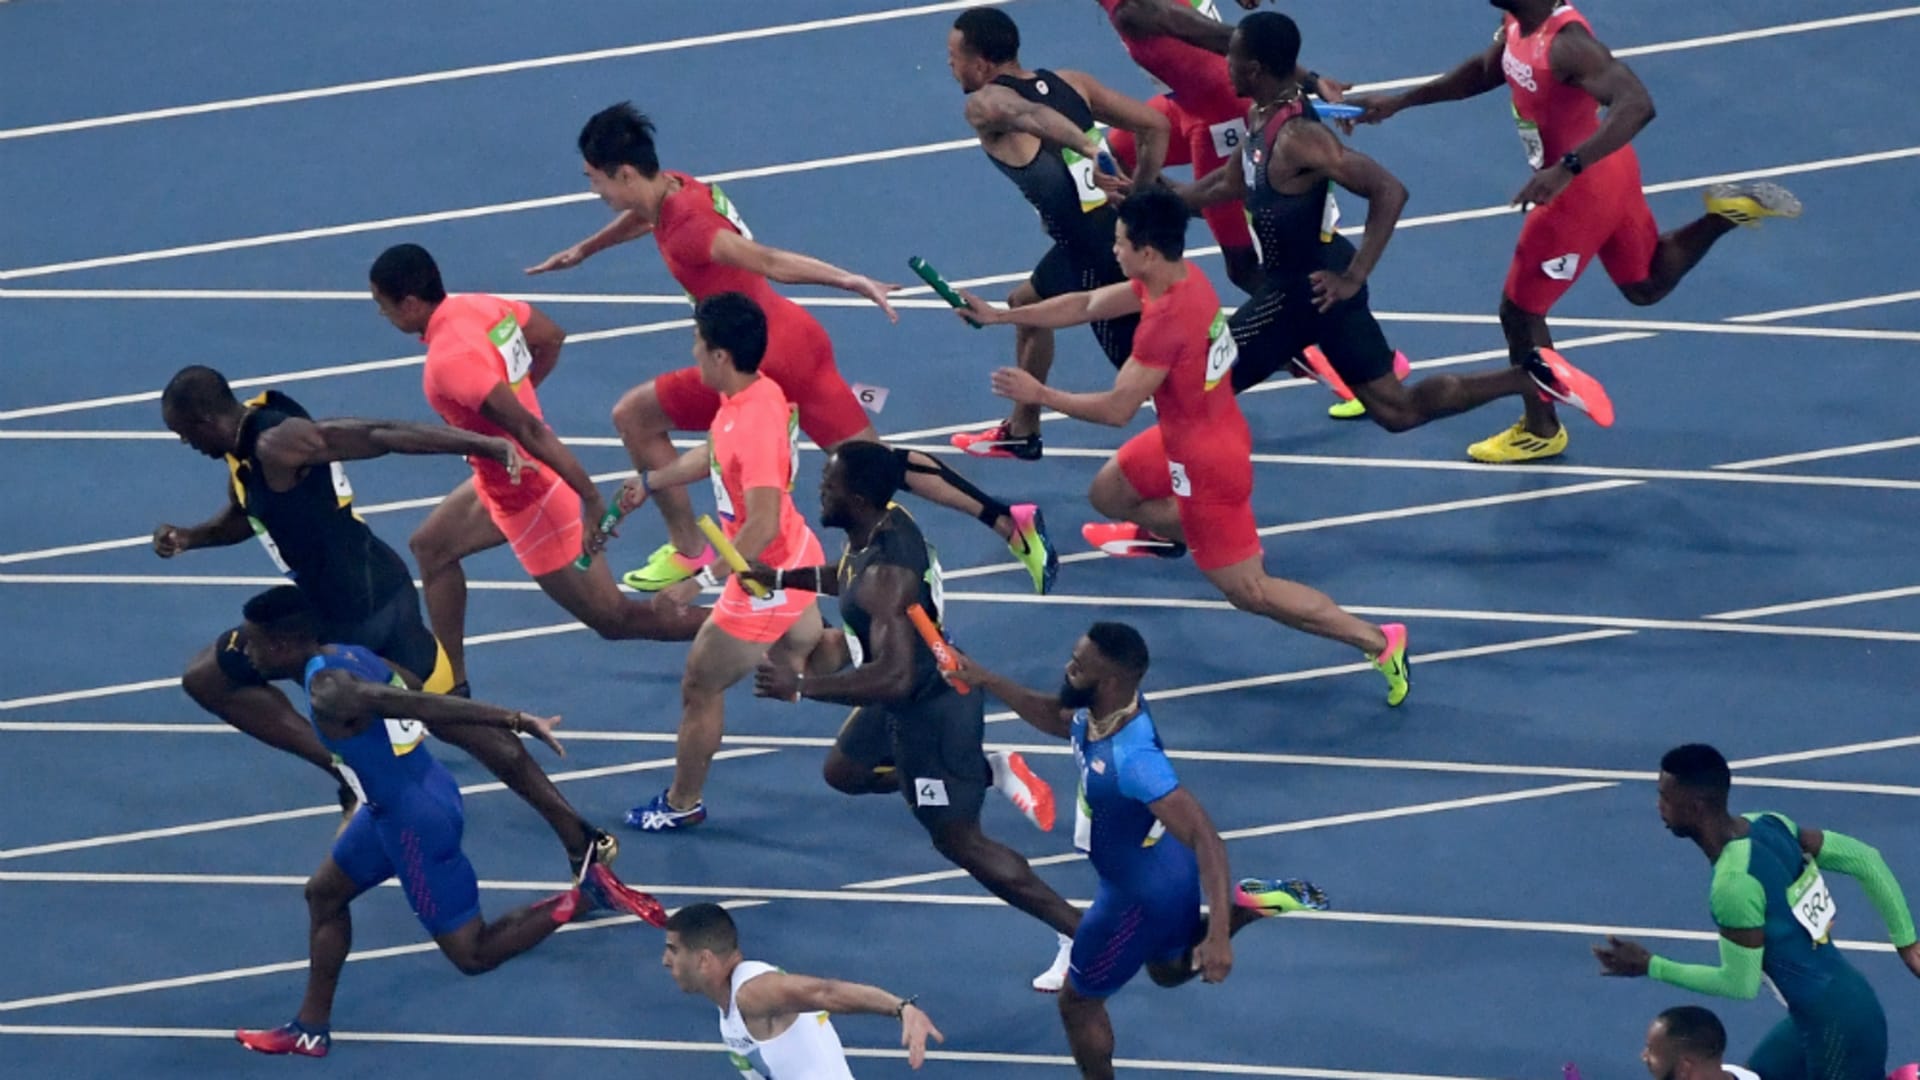 4 100メートルリレーの日本男子には世界も注目 戦力充実で 東京五輪では金メダル獲得も十分に可能